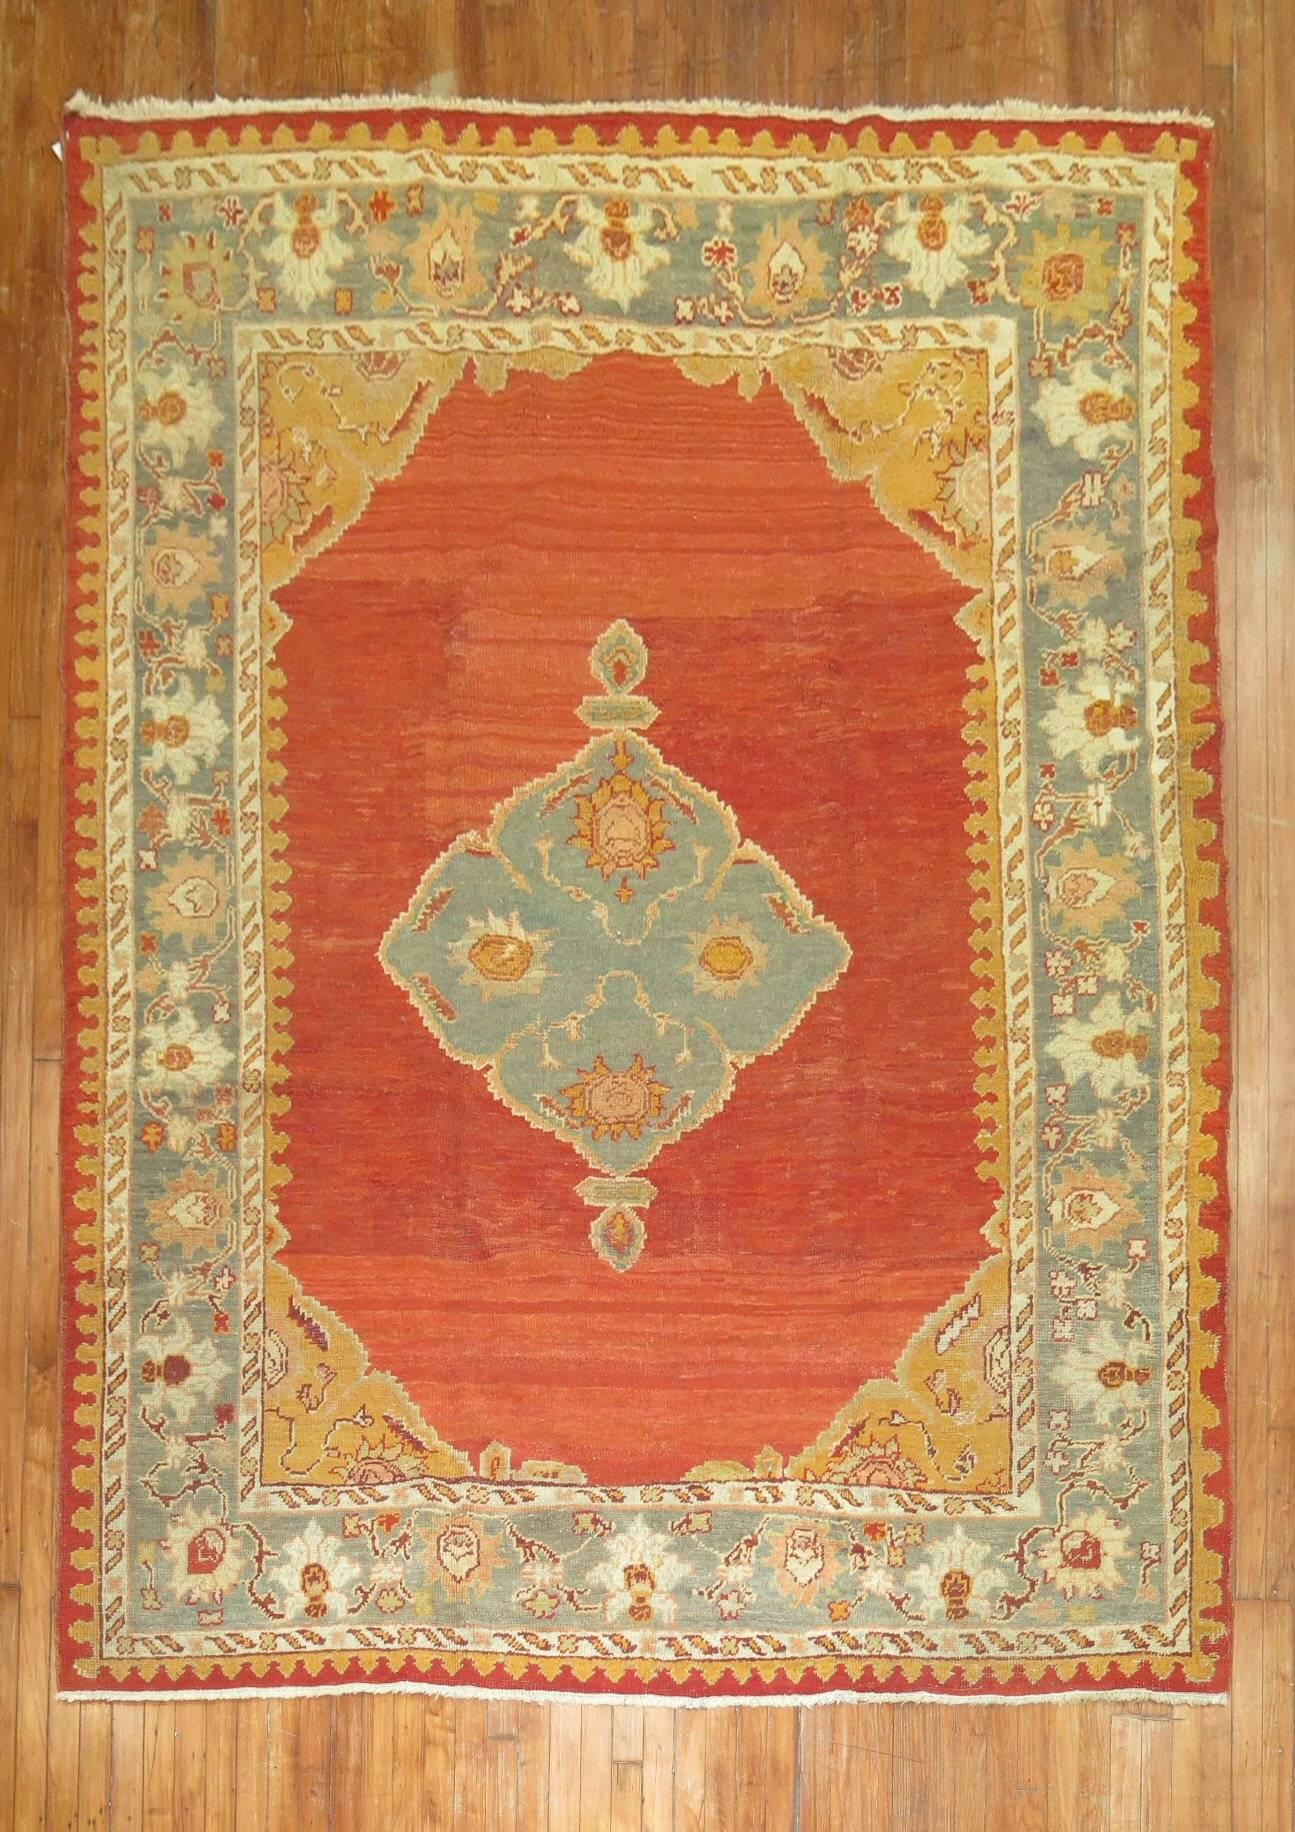 Eine angenehme antike türkische Oushak brillant getan in einer Tomate roten Boden, Salbei grün Grenze und zentrale Medaillon mit Weiß und Bronze Farbakzente enthalten.

7'3'' x 10'